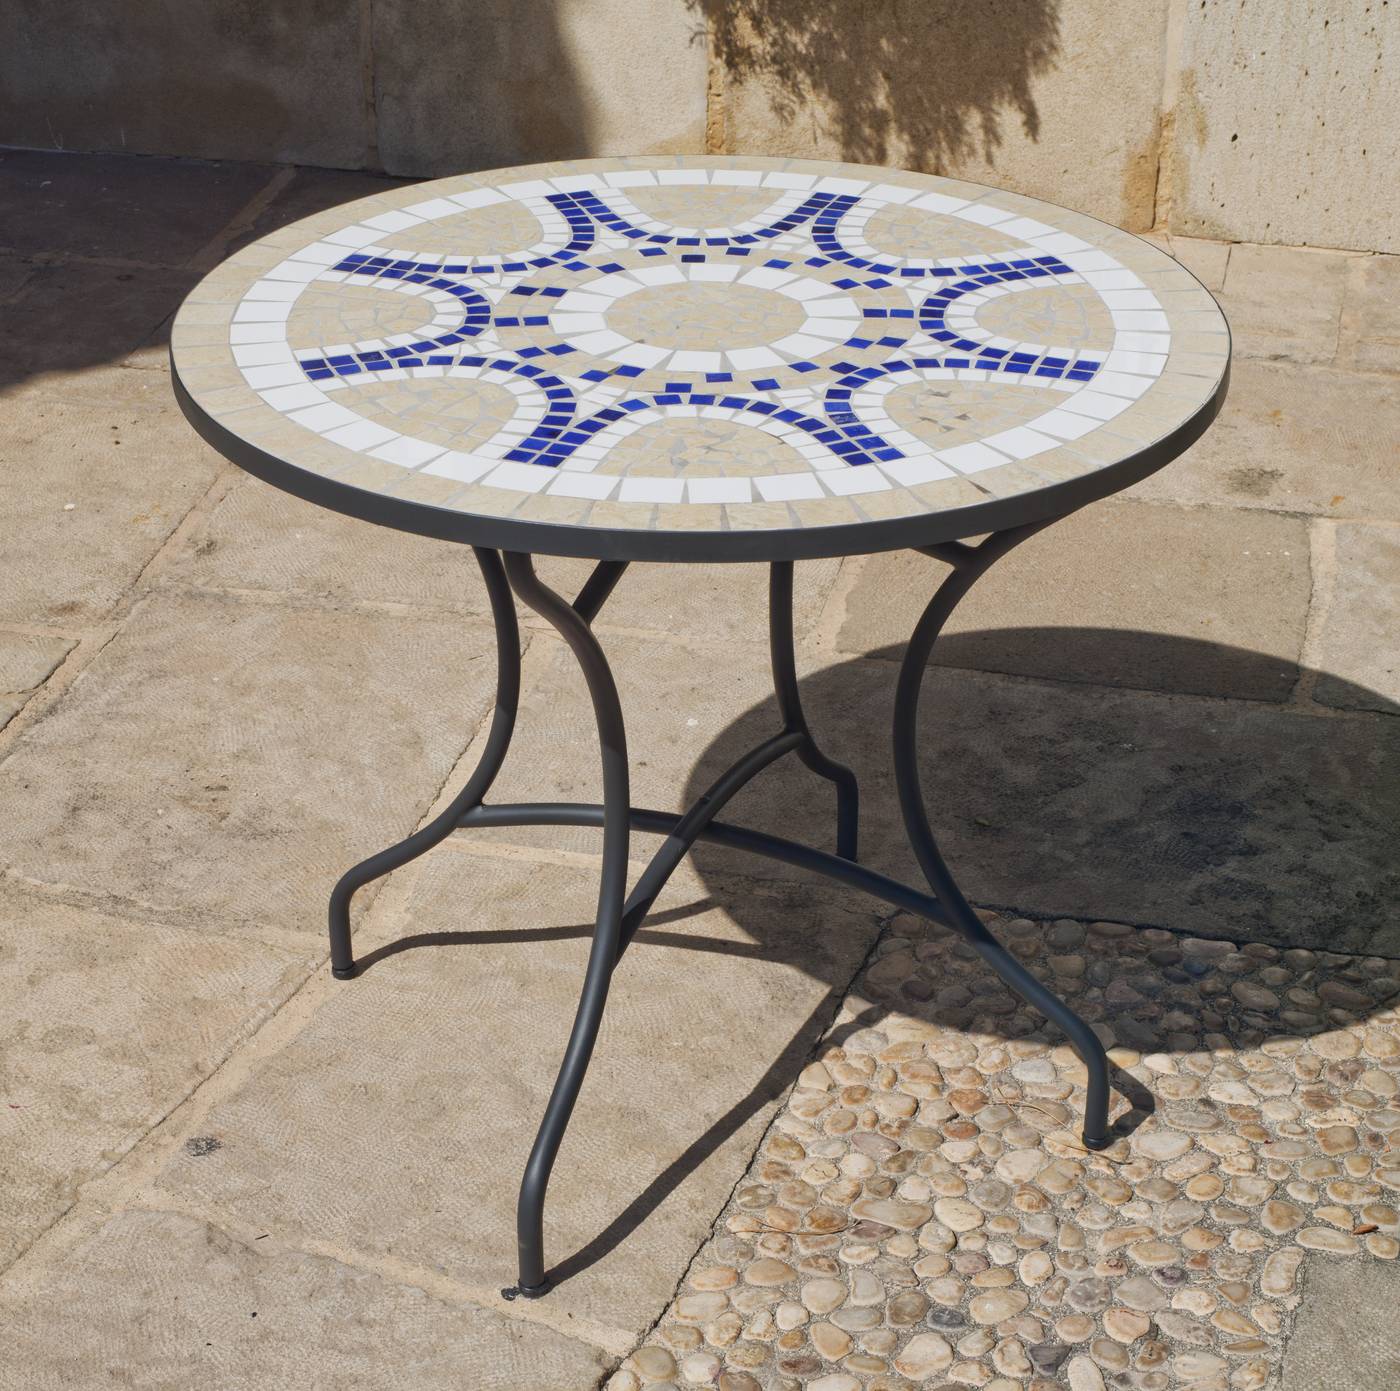 Mesa de acero forjado color gris antracita, con tablero mosaico circular de 75 cm.